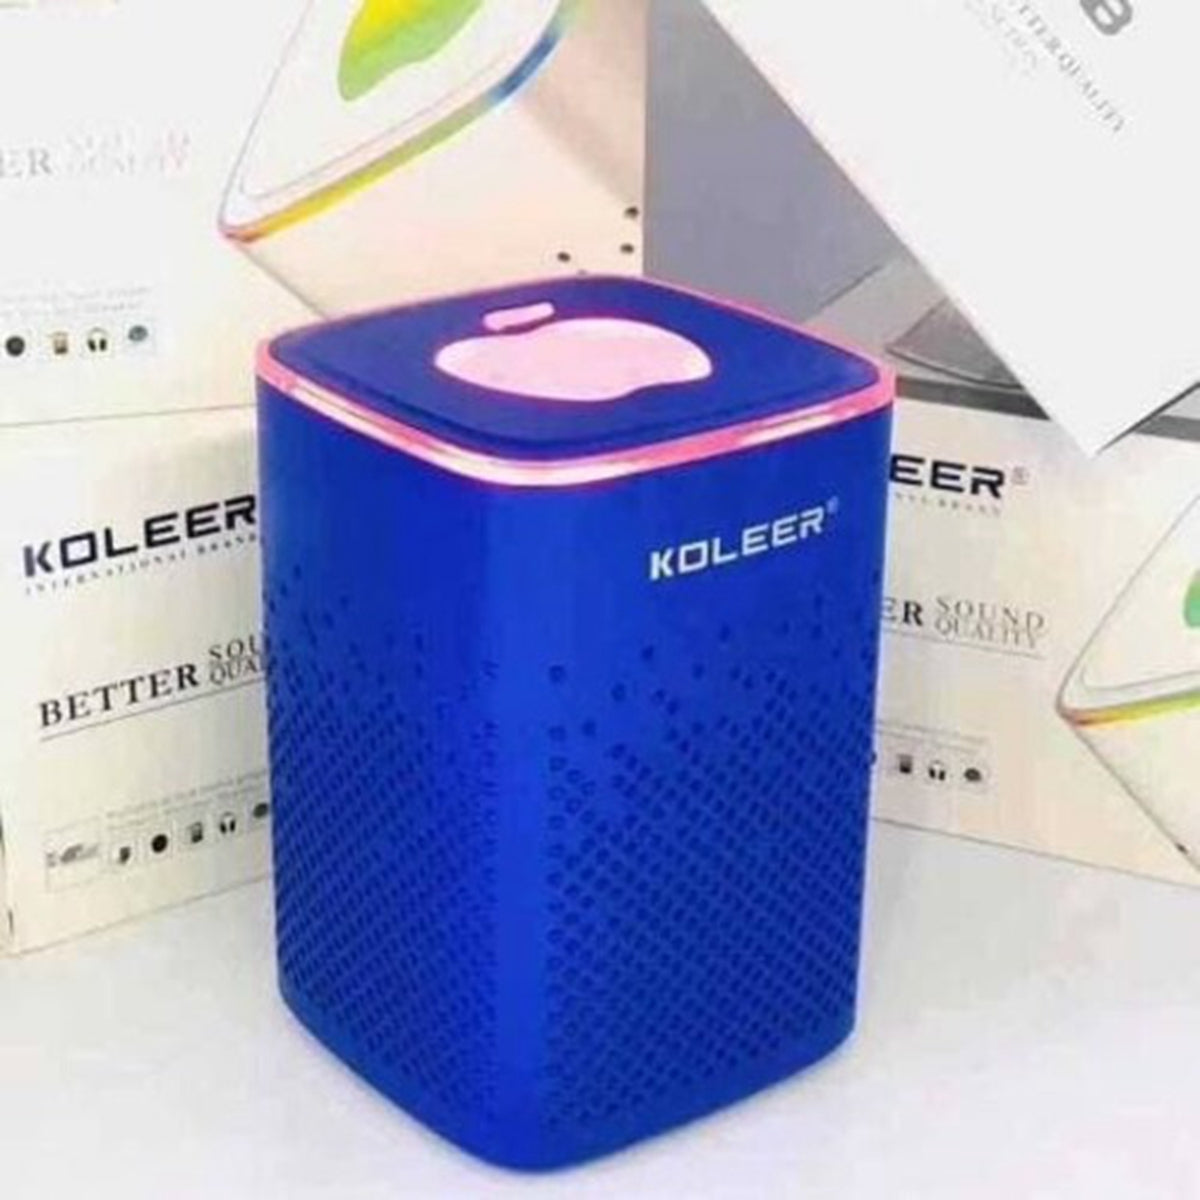 Koleer S818-Altavoz Bluetooth